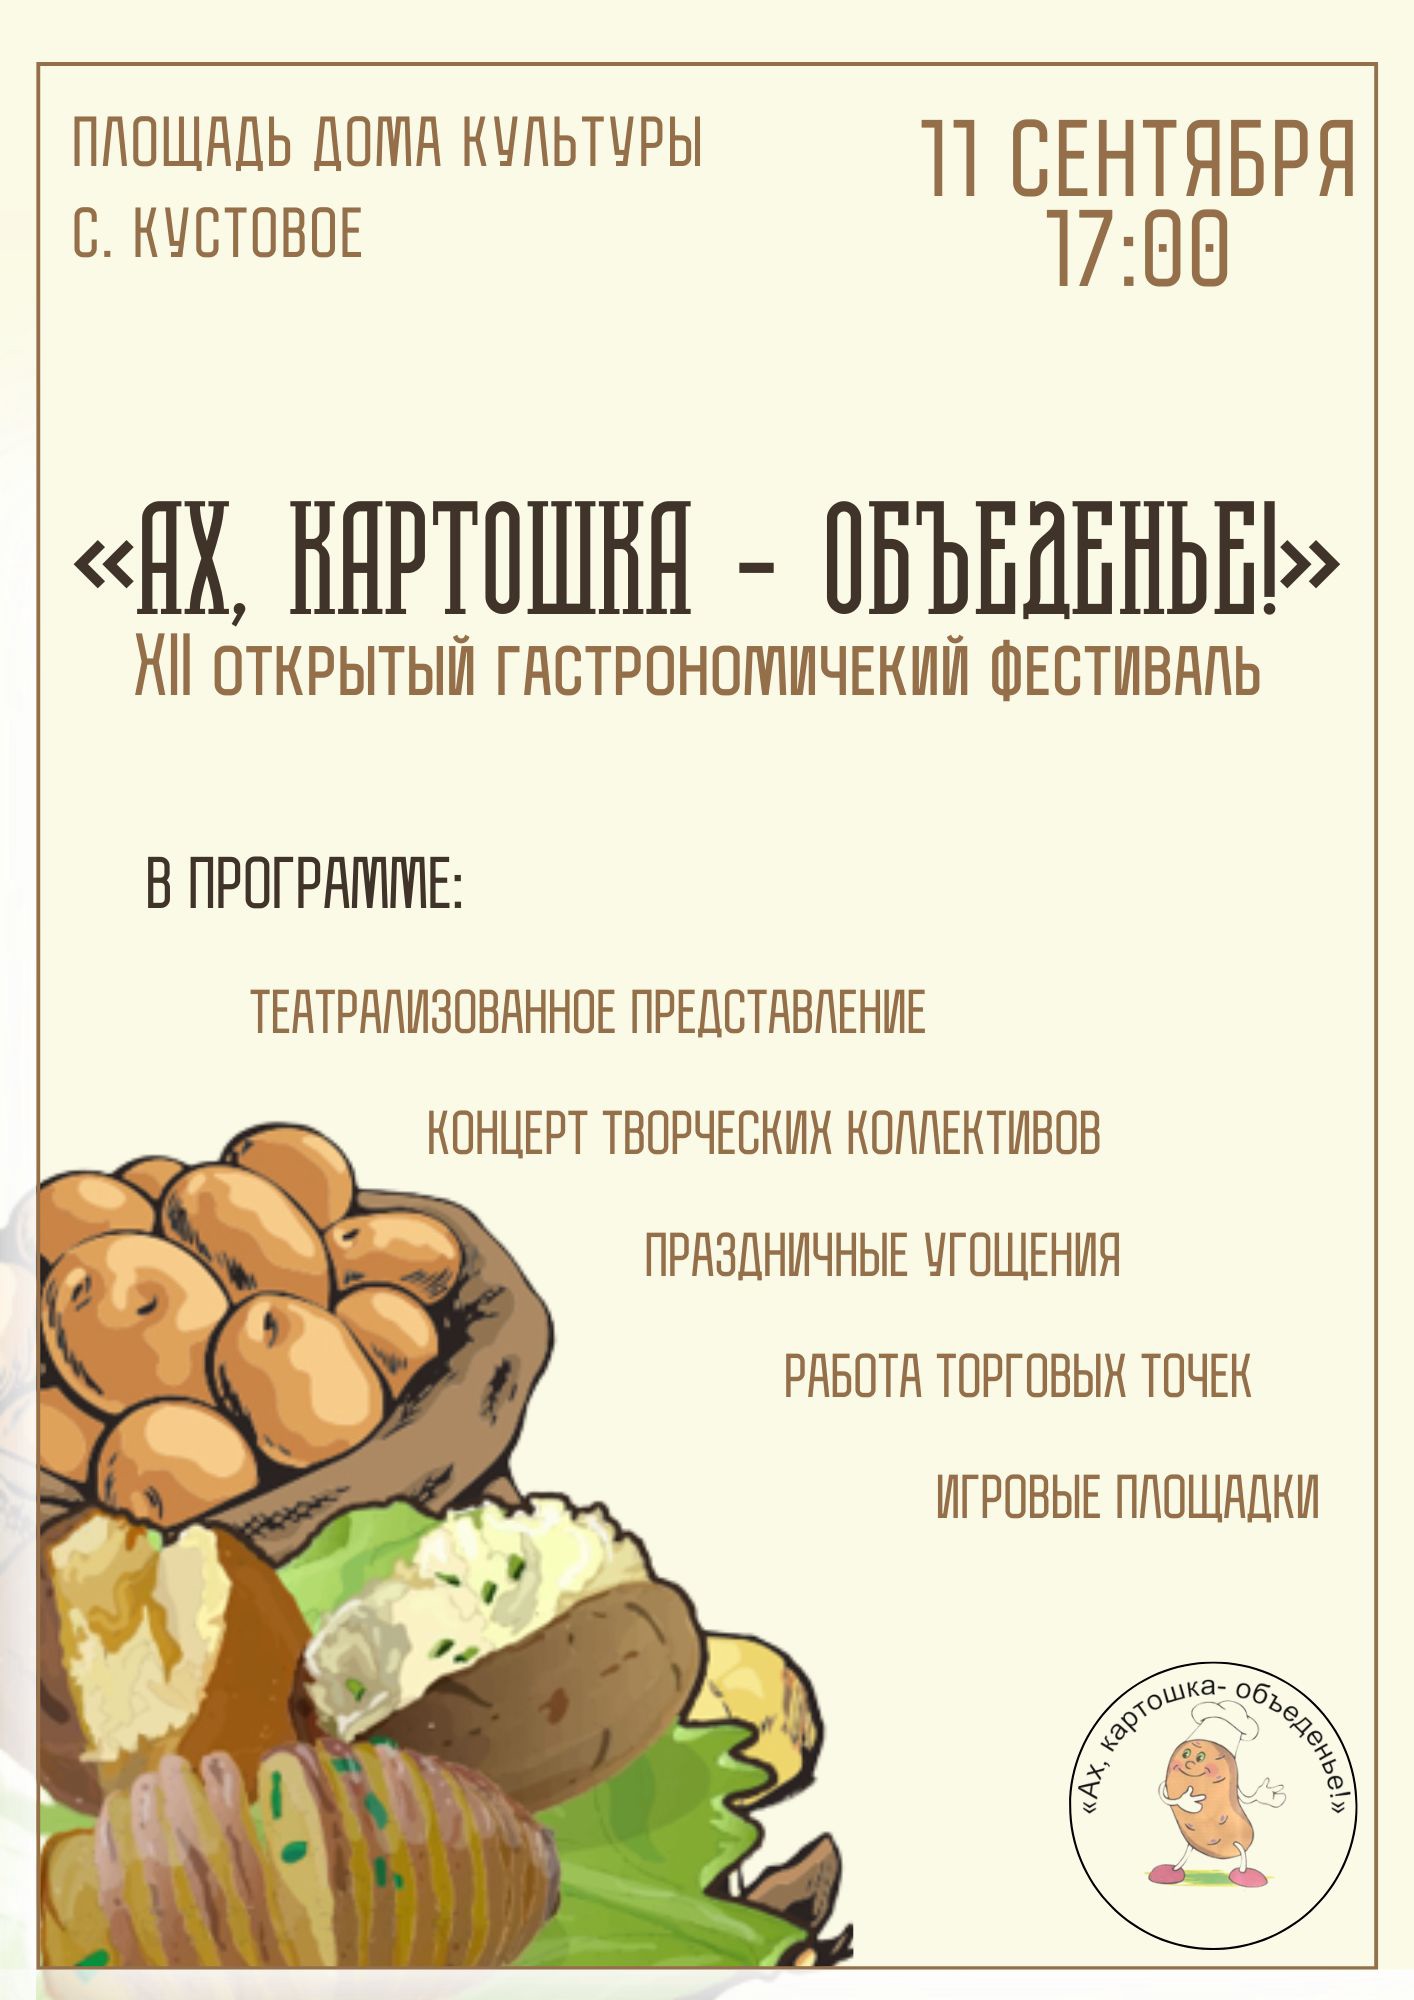 XII открытый фестиваль «Ах, картошка - объеденье!» пройдёт в селе Кустовое.